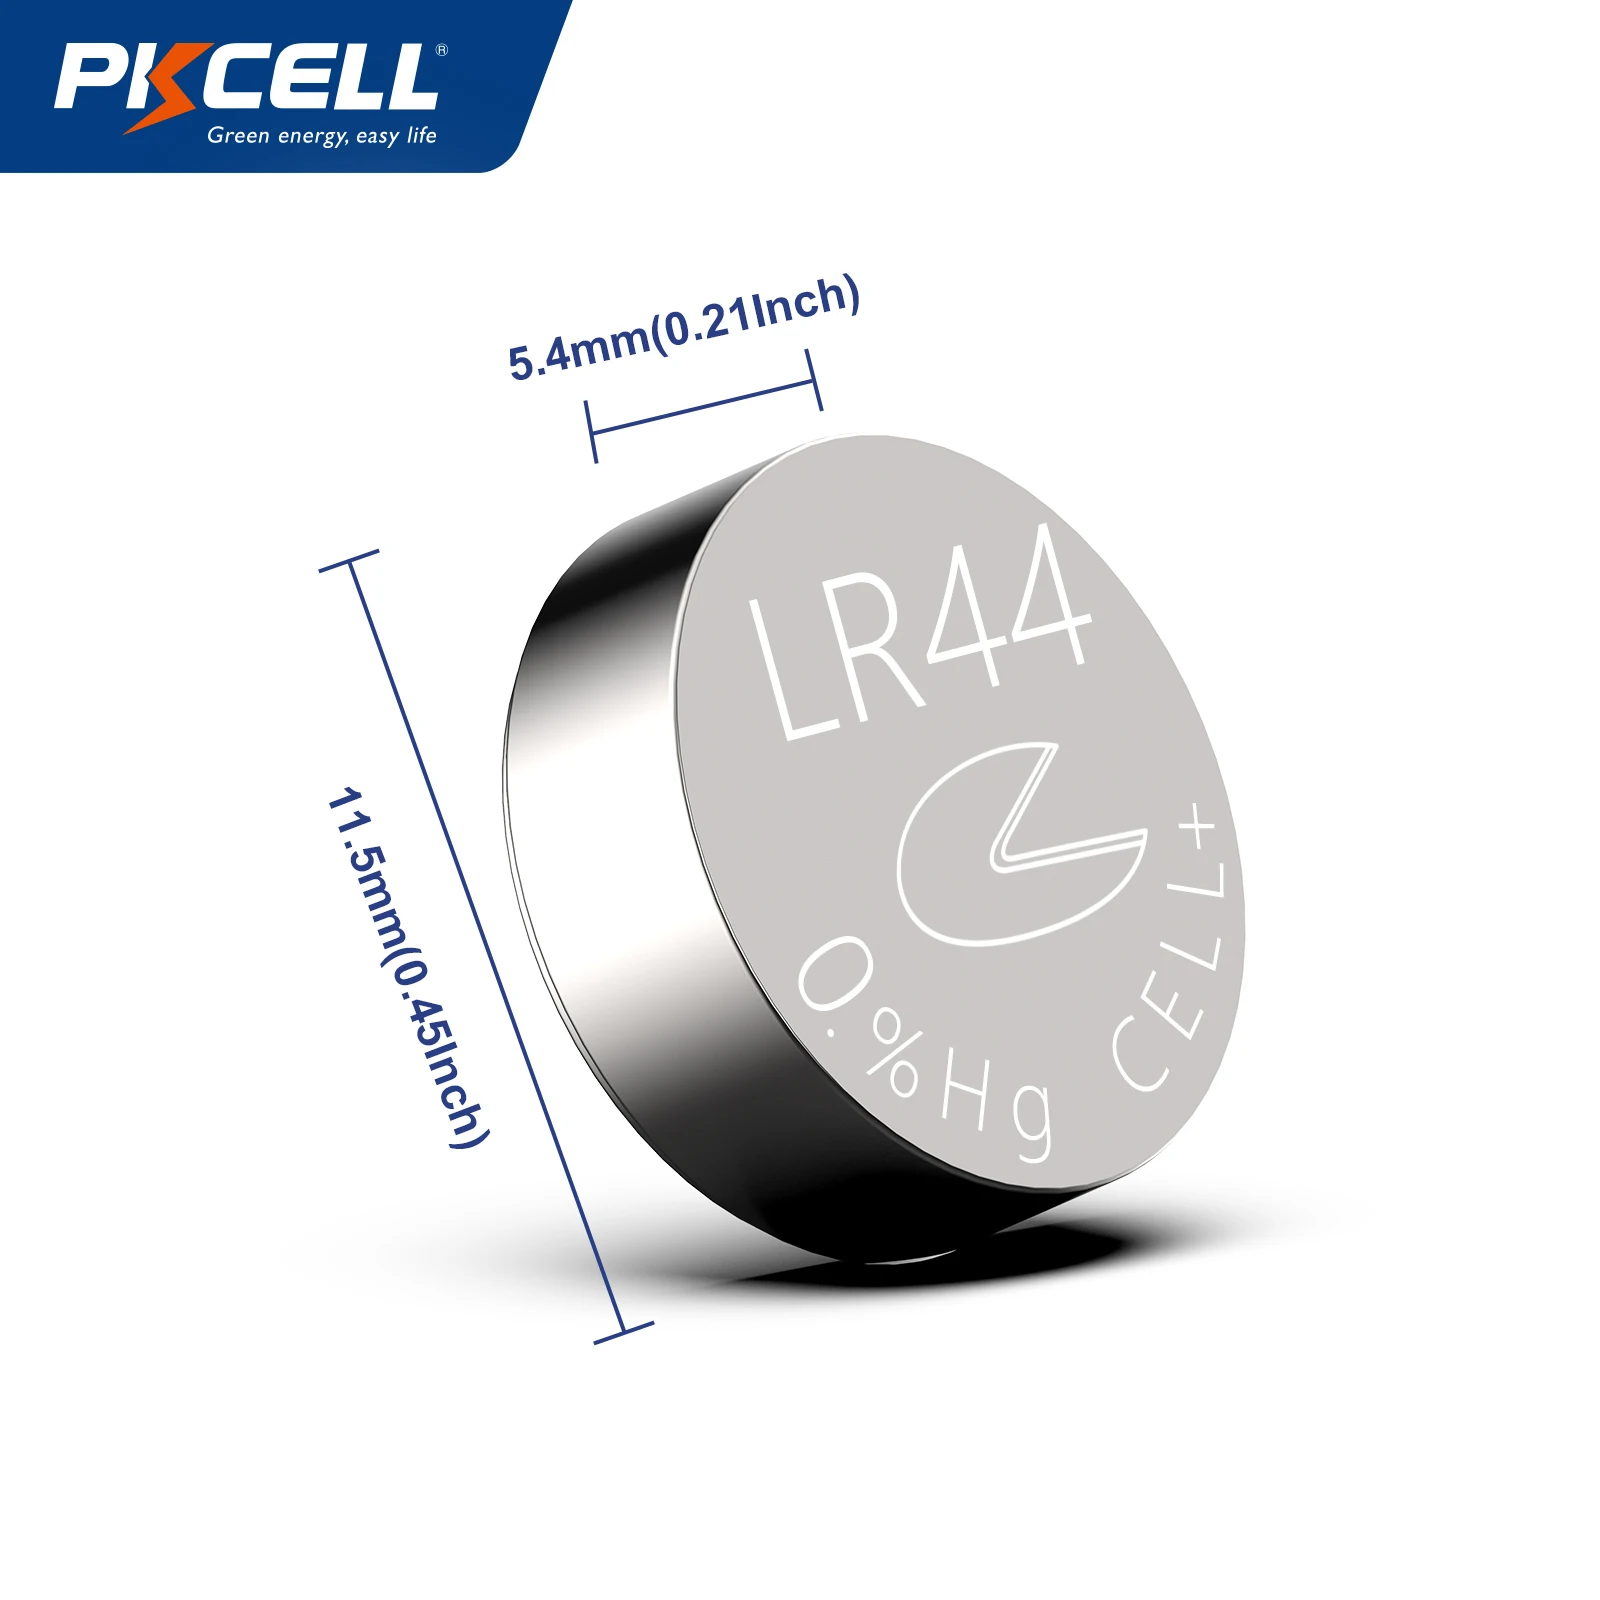 PKCELL Celda de botón alcalina LR44, pilas A76 de 1.5 V AG13 - 40 unidades